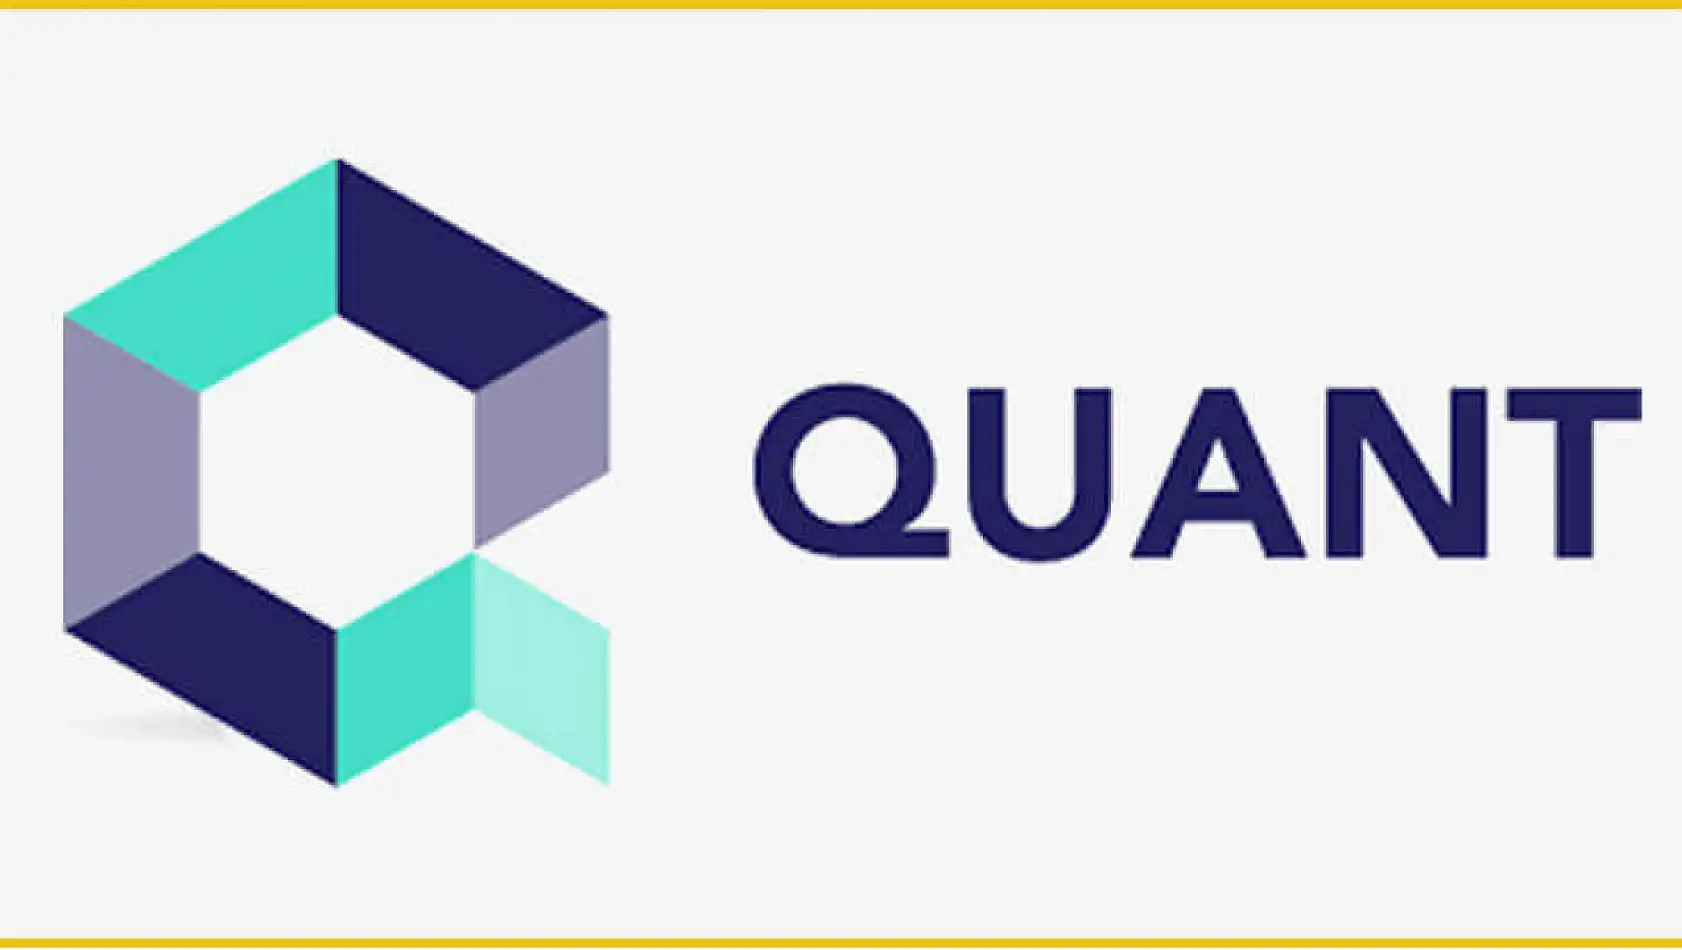 Quant Coin'in blockchain teknolojisindeki yükselişi merak uyandırıyor